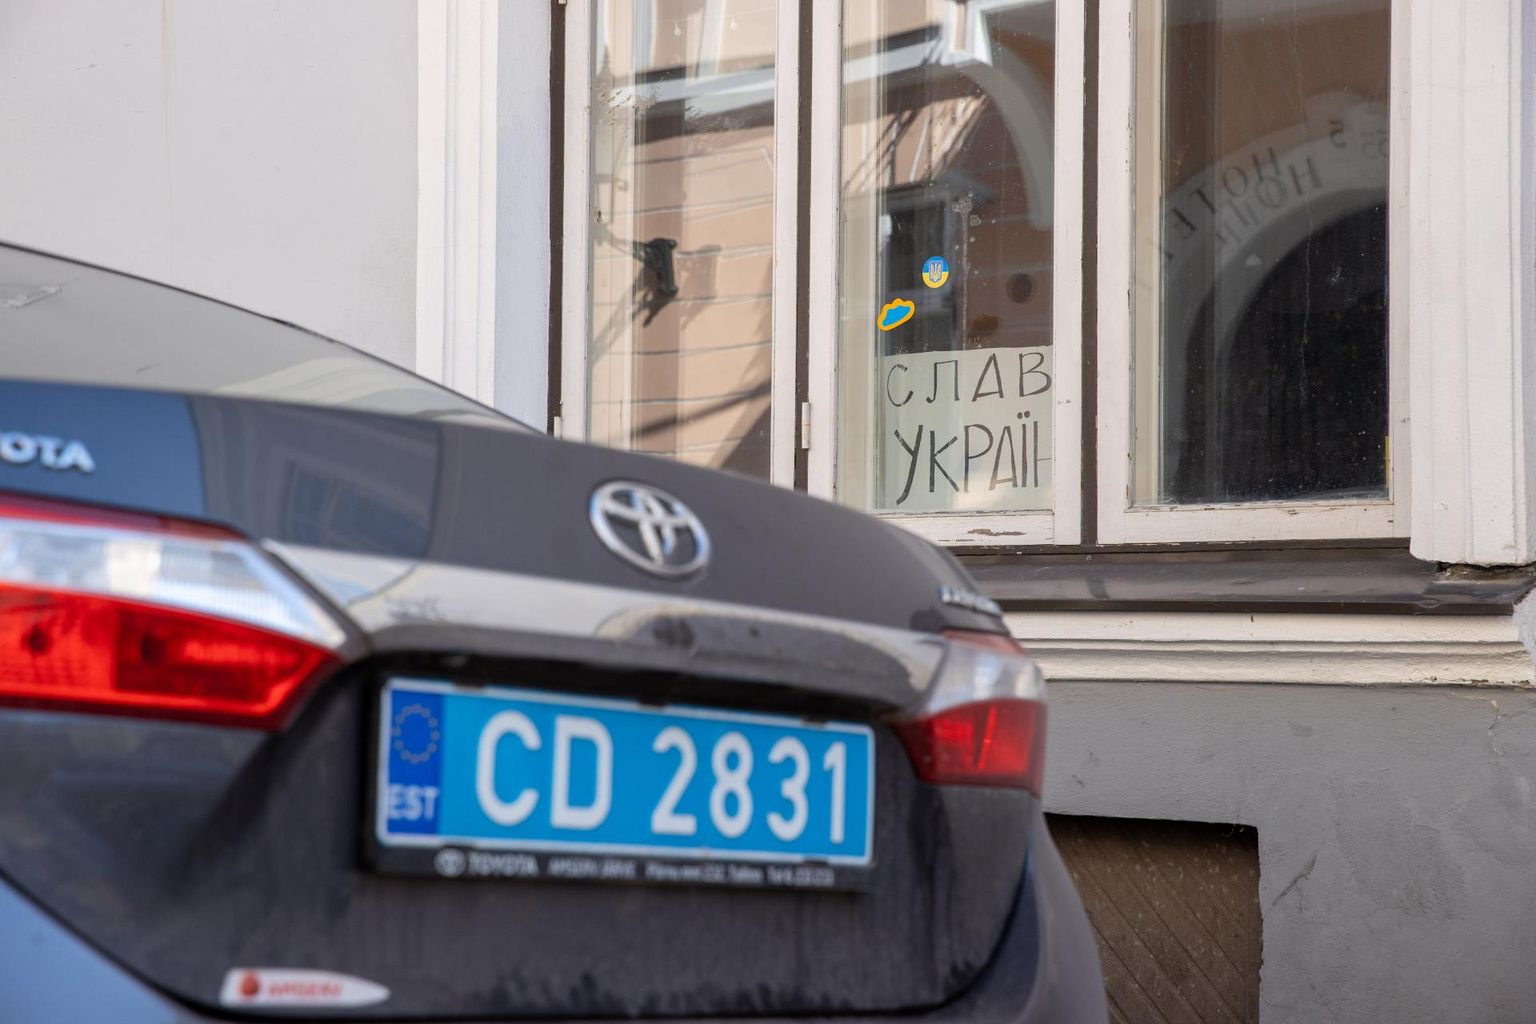 Enamikul Laial tänaval parkivaist autodest on diplomaatilise korpuse numbrid, ent leidub neidki, kus armatuurlaual vigases eesti keeles silt, et auto kuulub Vene saatkonnale